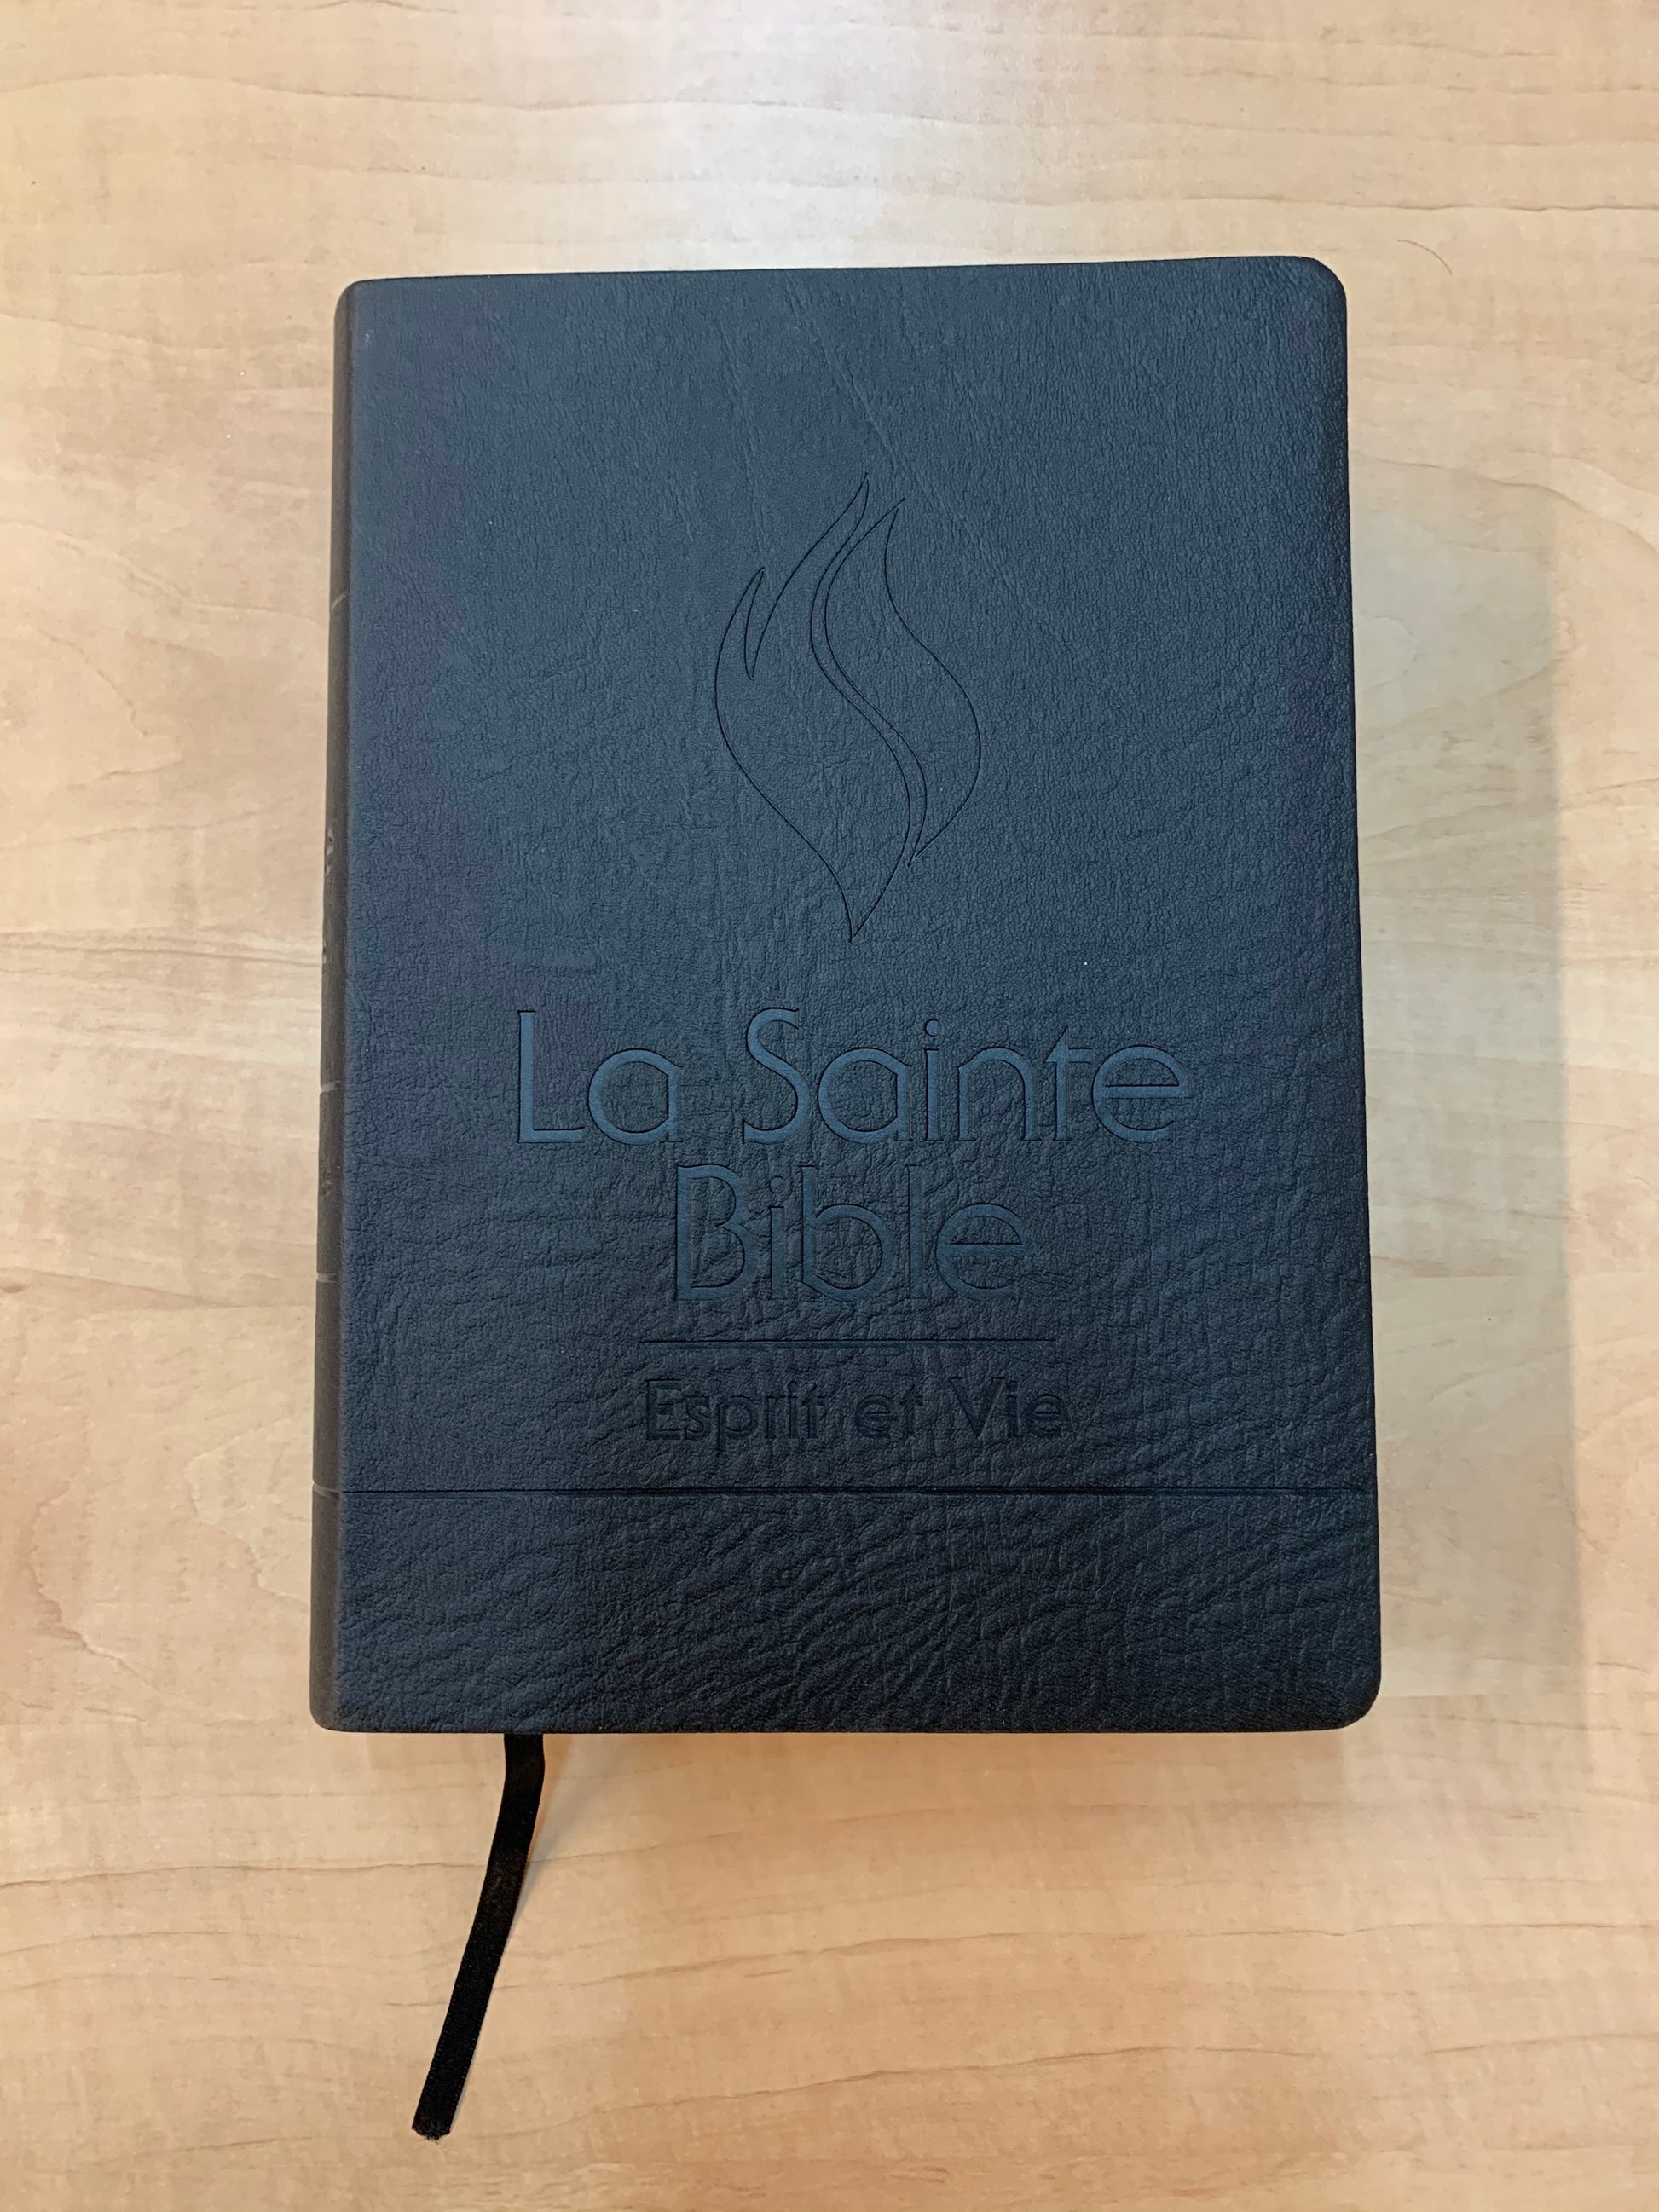 Bible Esprit et Vie Edition Black Out PU Noir - Boutique iNSPIRATION